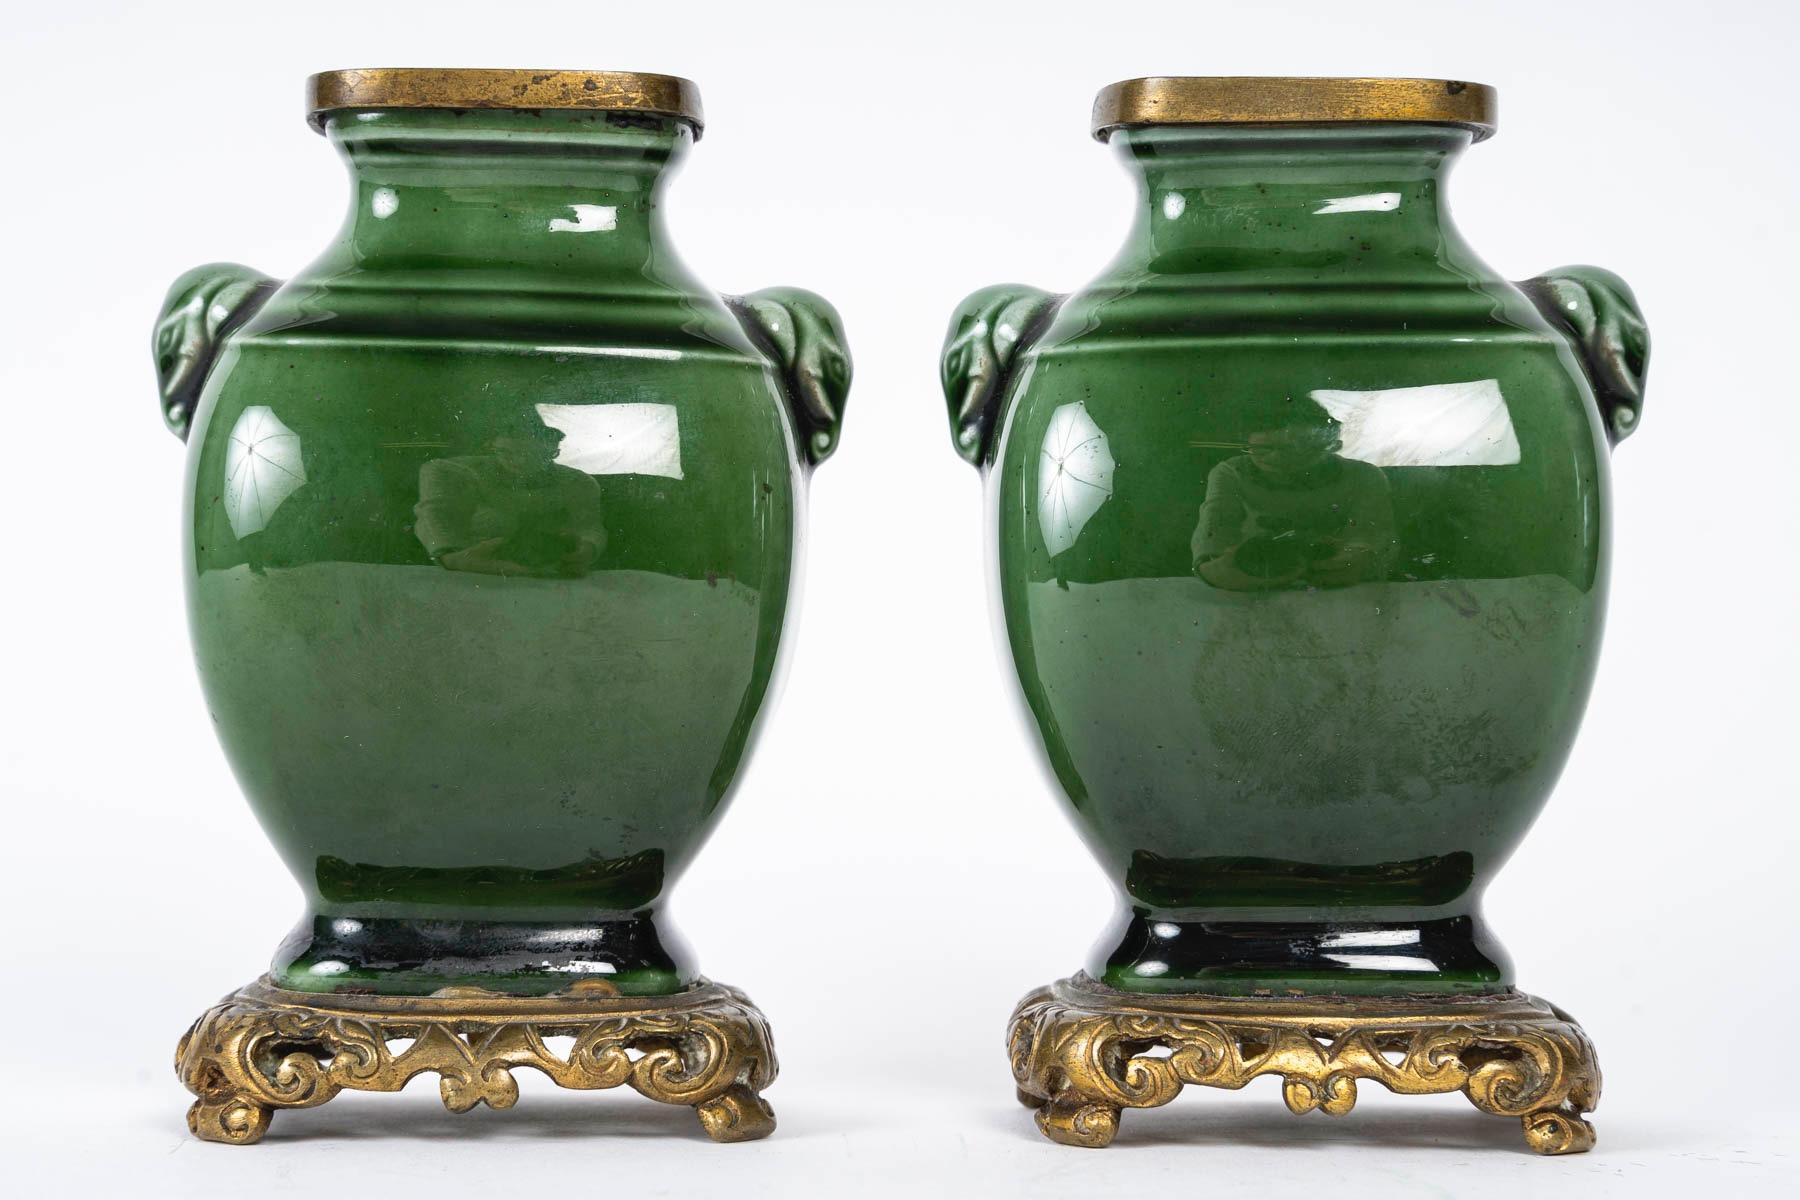 Theodore Deck (1823-1891) 
Ein tiefgrün emailliertes Fayence-Miniatur-Vasenpaar, geformt im chinesischen archaischen Geschmack.
Buchten in Form von Elefantenköpfen.
Mit durchbrochenen Ormolu-Beschlägen an Sockel und Rand
Geprägtes Zeichen TH.D in